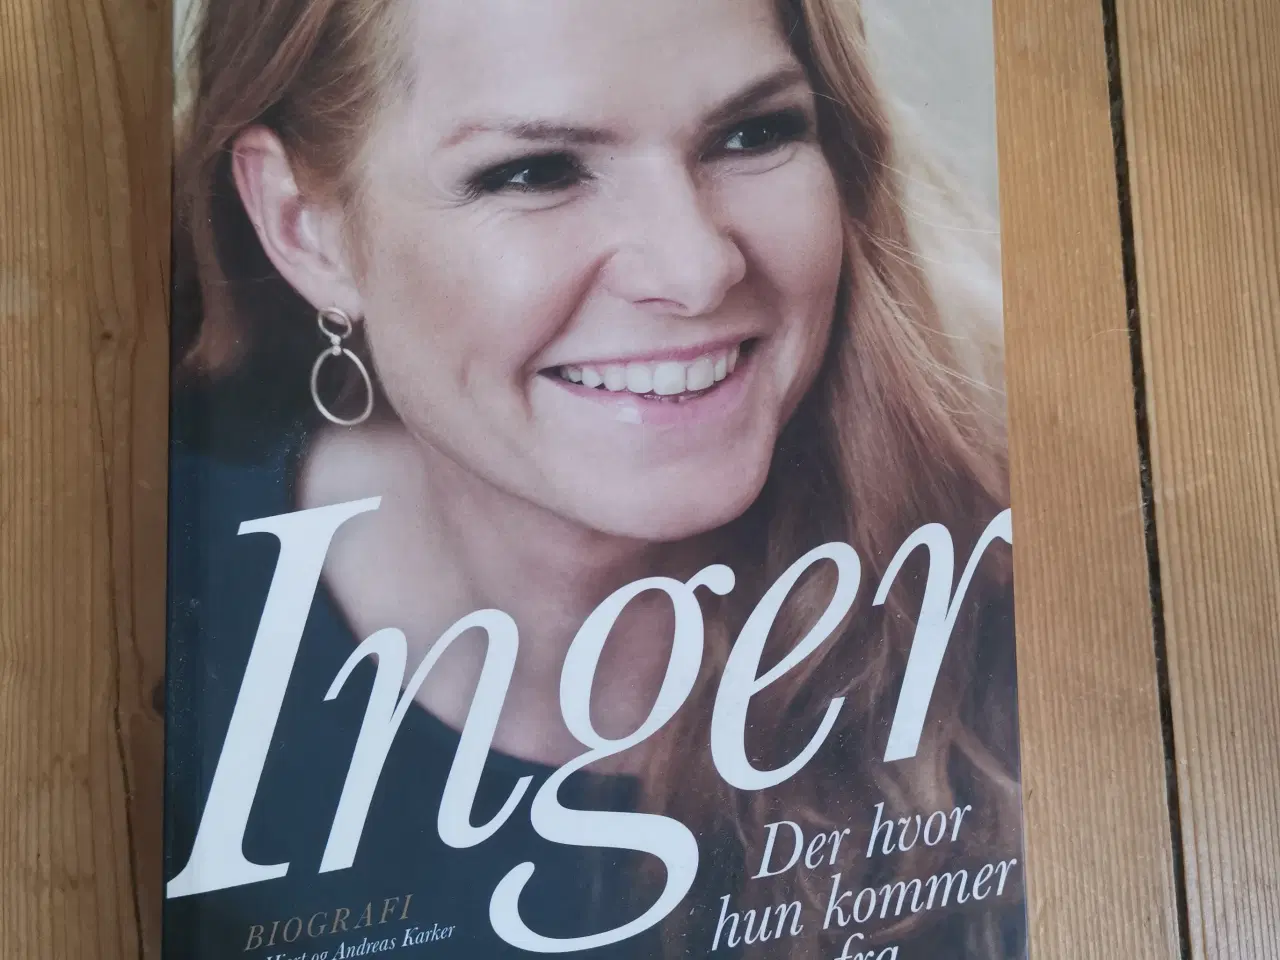 Billede 1 - Inger Der hvor hun kommer fra Bog - Støjberg